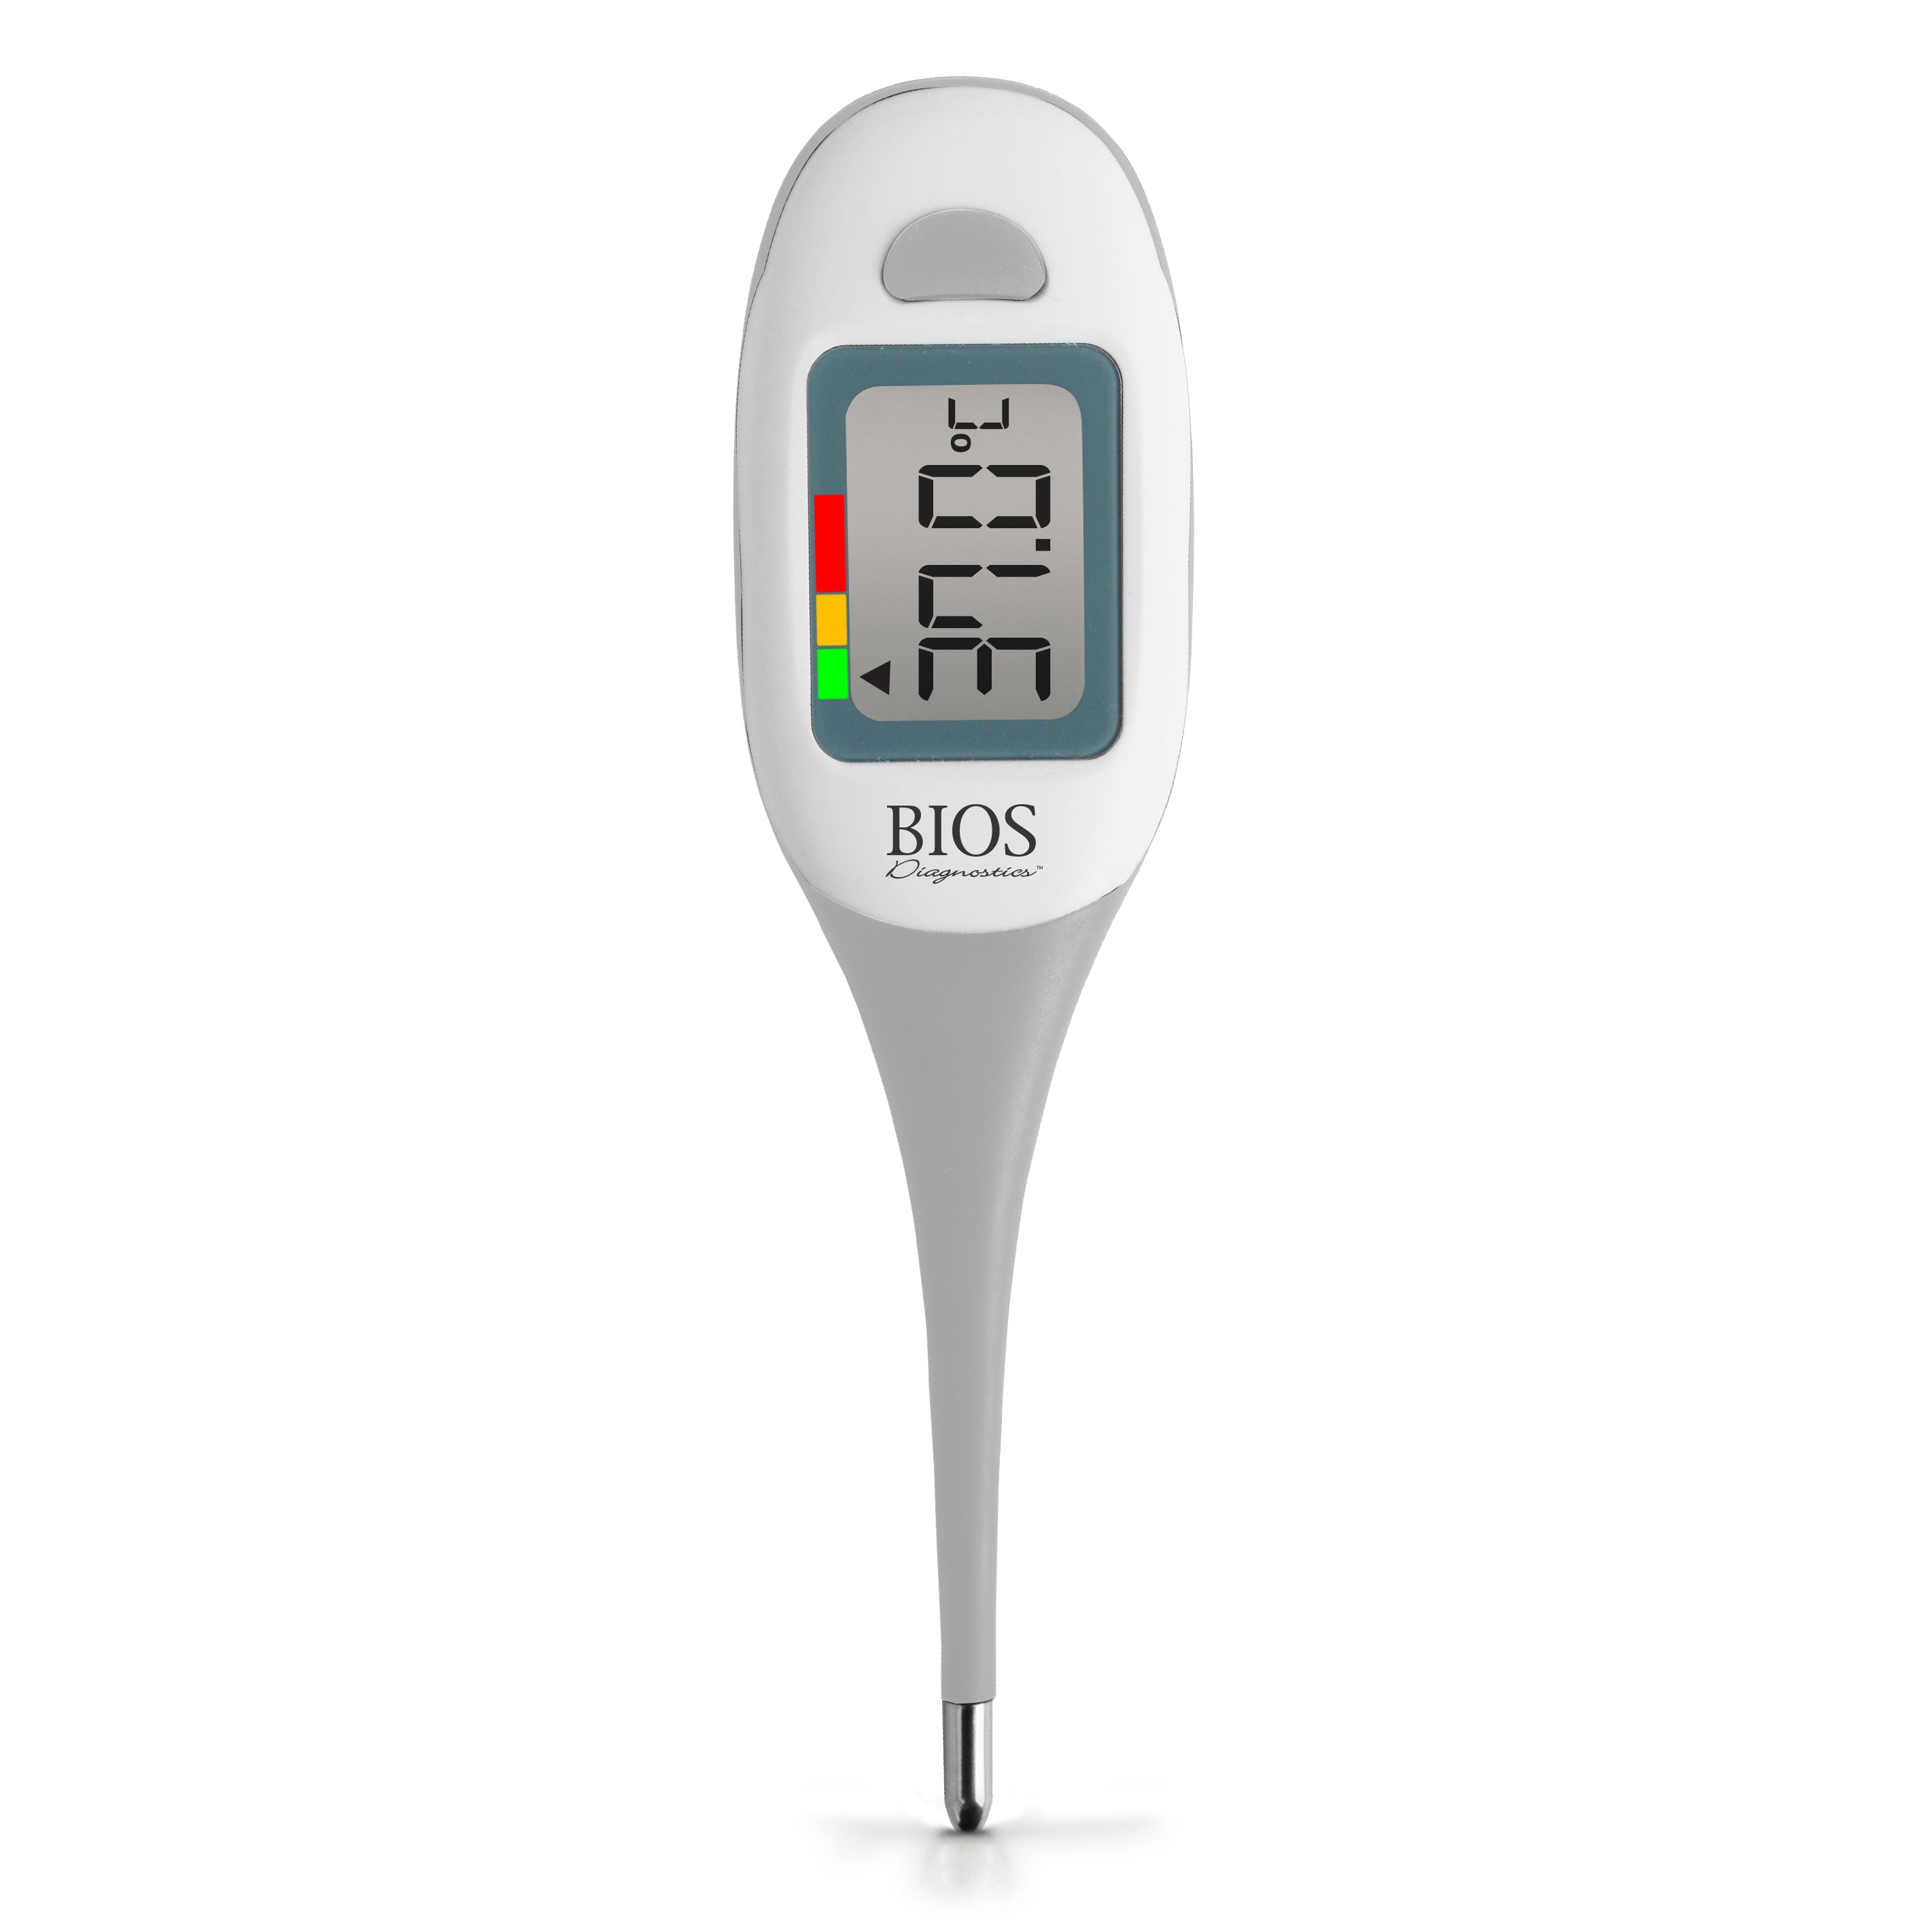 Jumbo Thermometer, Gag VA519